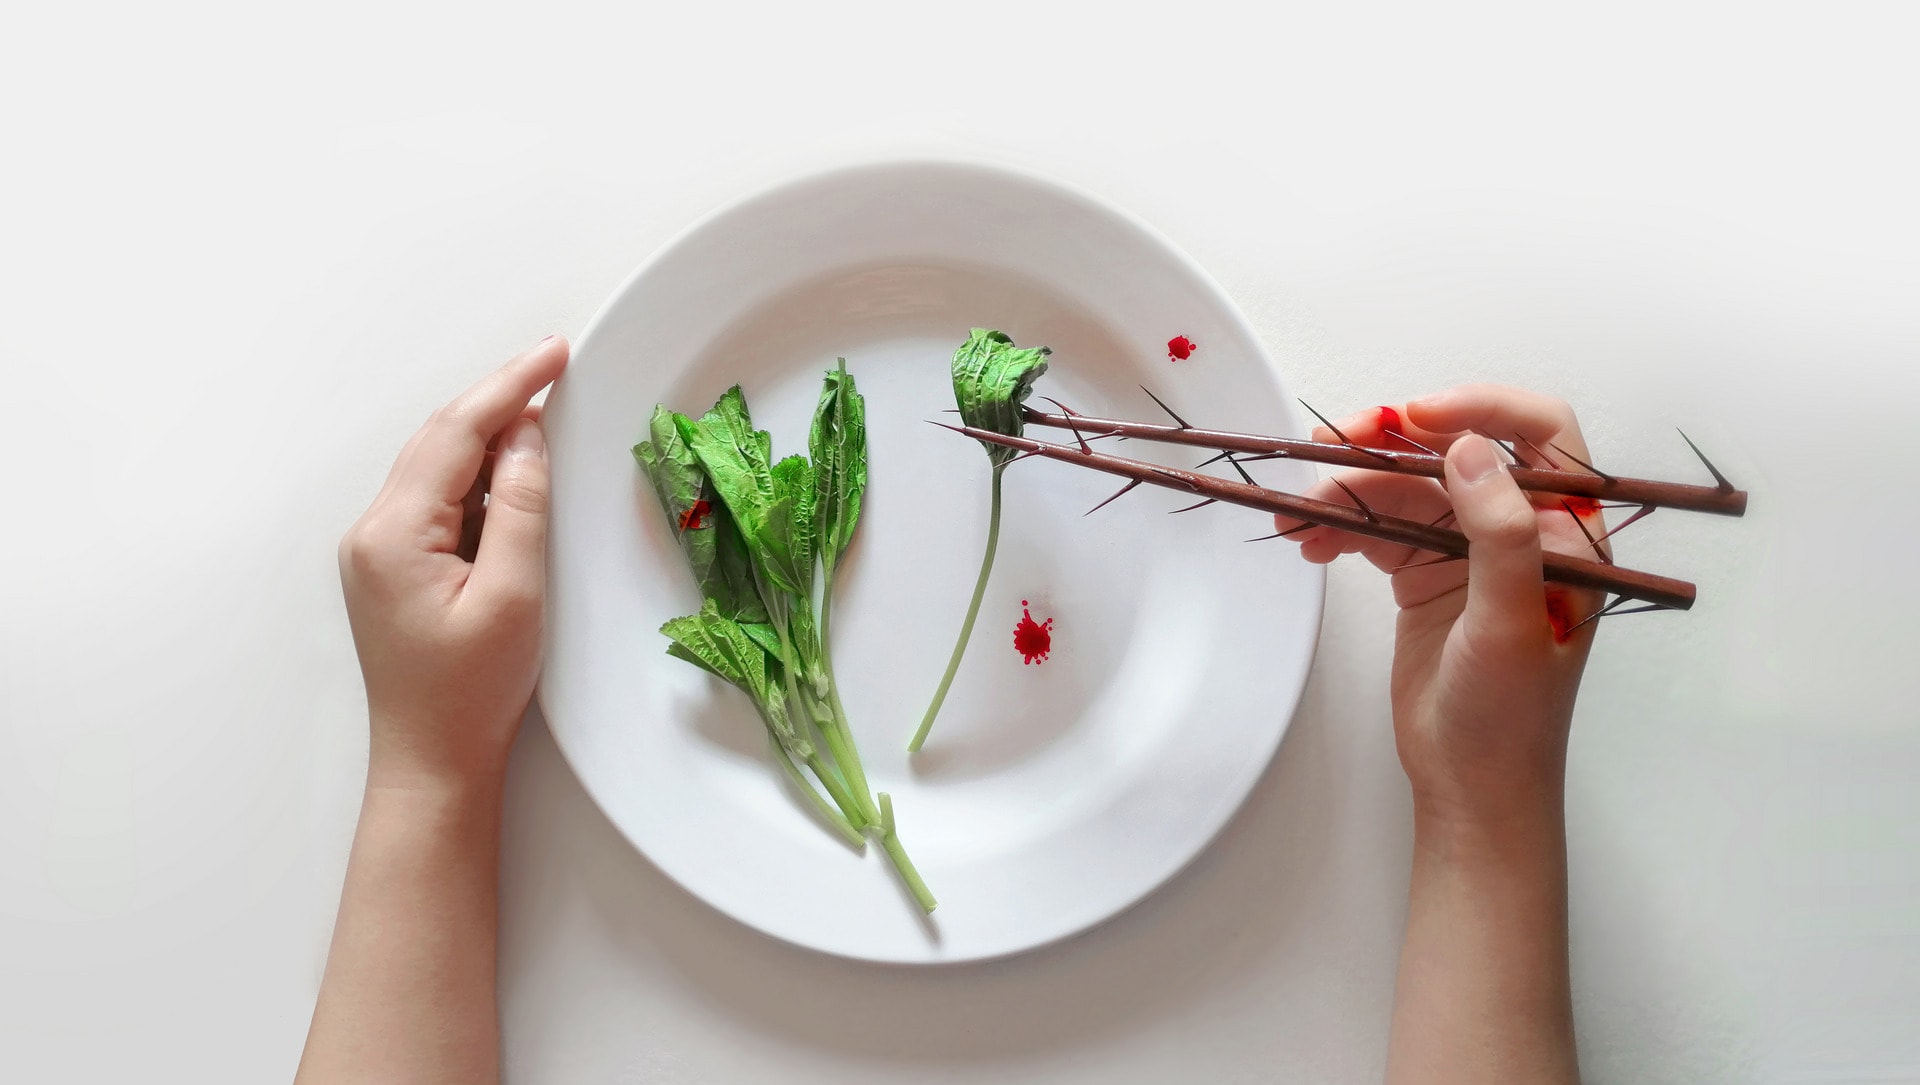 Diet trainer — Chopsticks